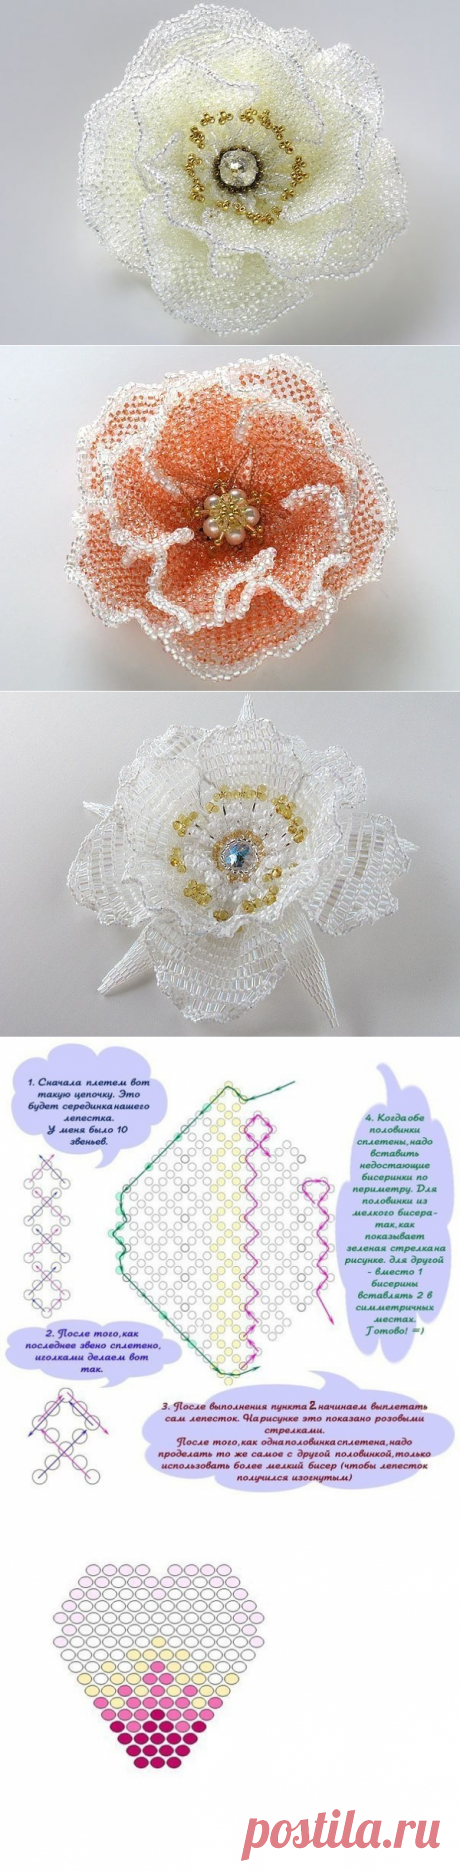 Цветы из бисера схема плетения (Бисероплетение) | Журнал Вдохновение Рукодельницы